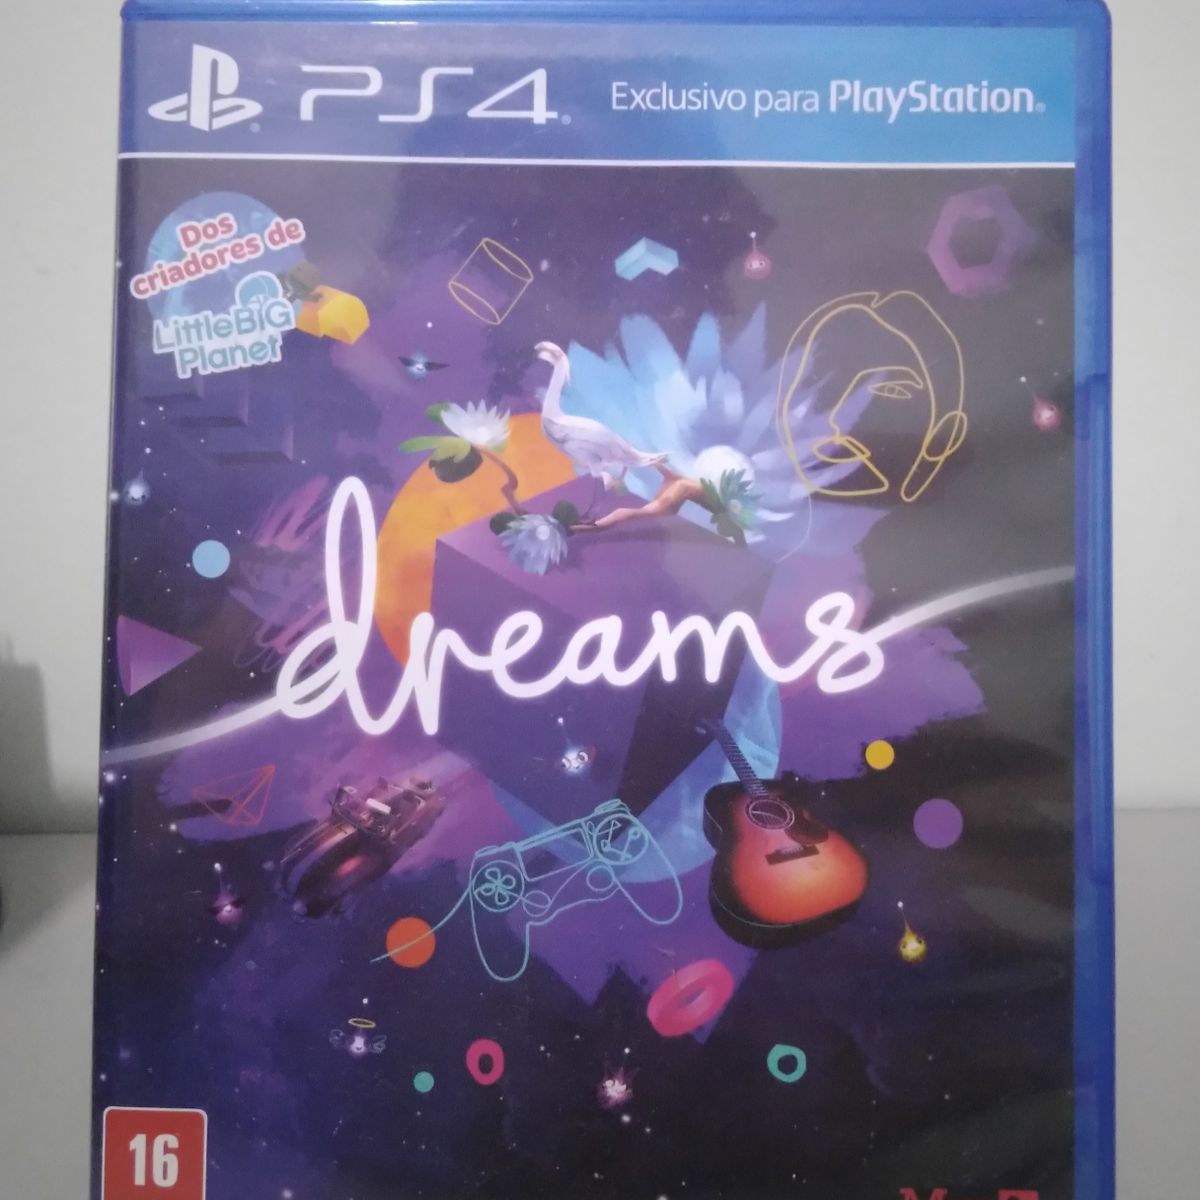 Jogo de PS4 Dreams (MÍDIA FÍSICA)